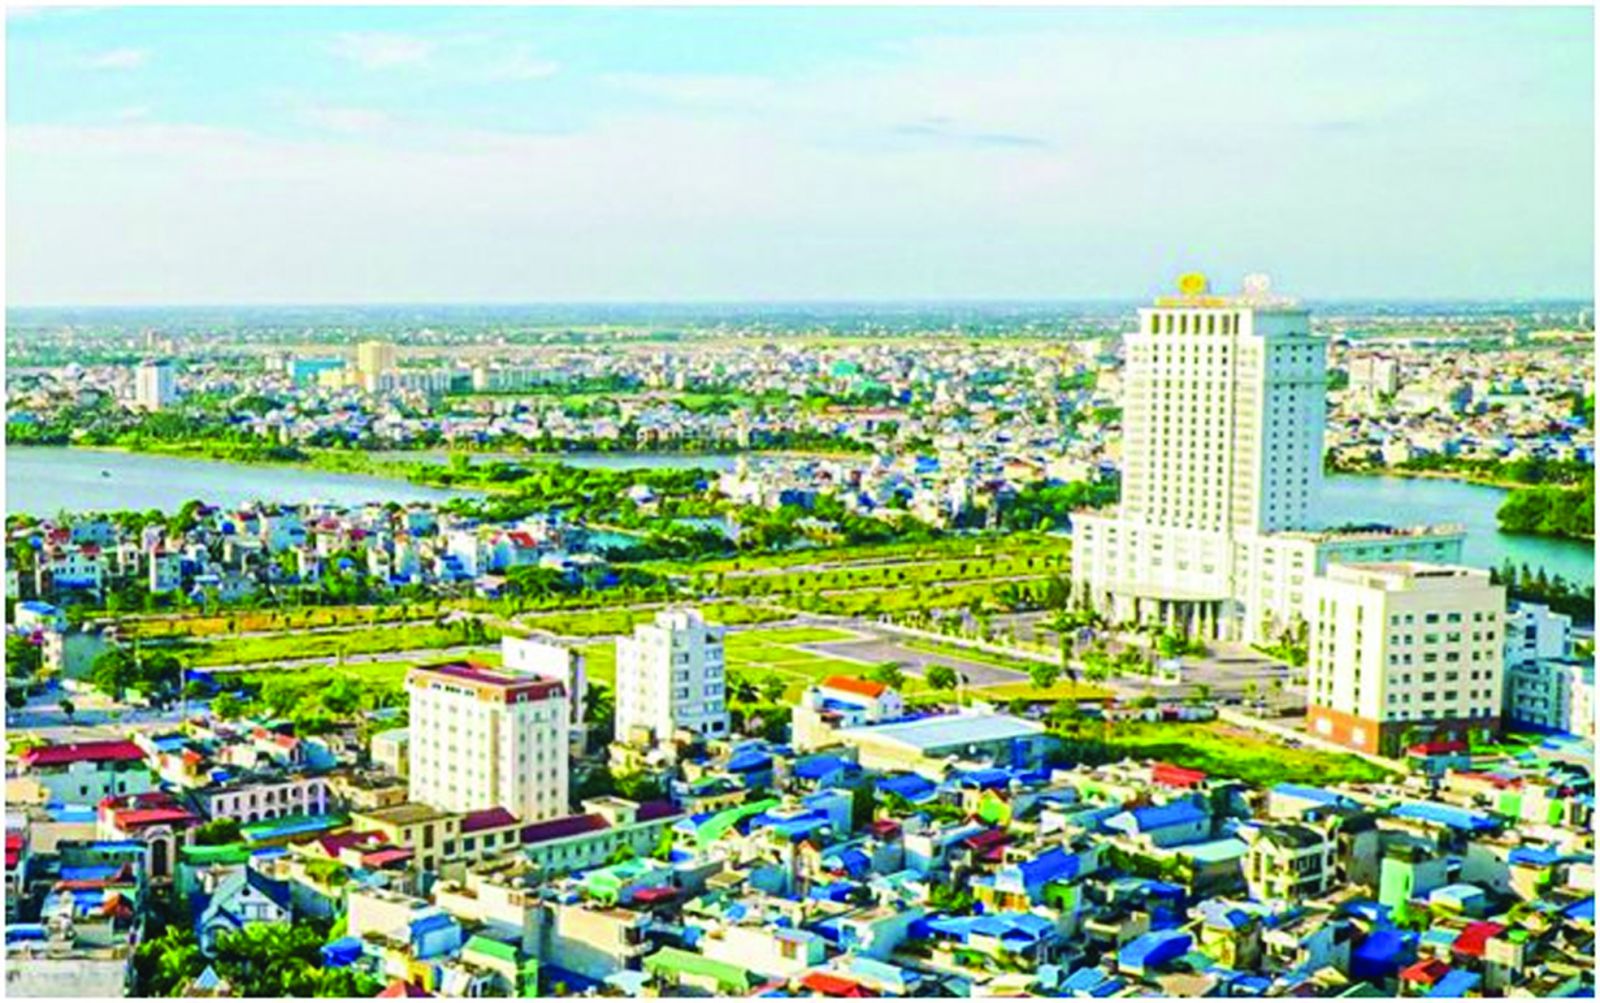  Diện mạo đô thị Nam Định có bước thay đổi mạnh mẽ theo hướng văn minh, hiện đại